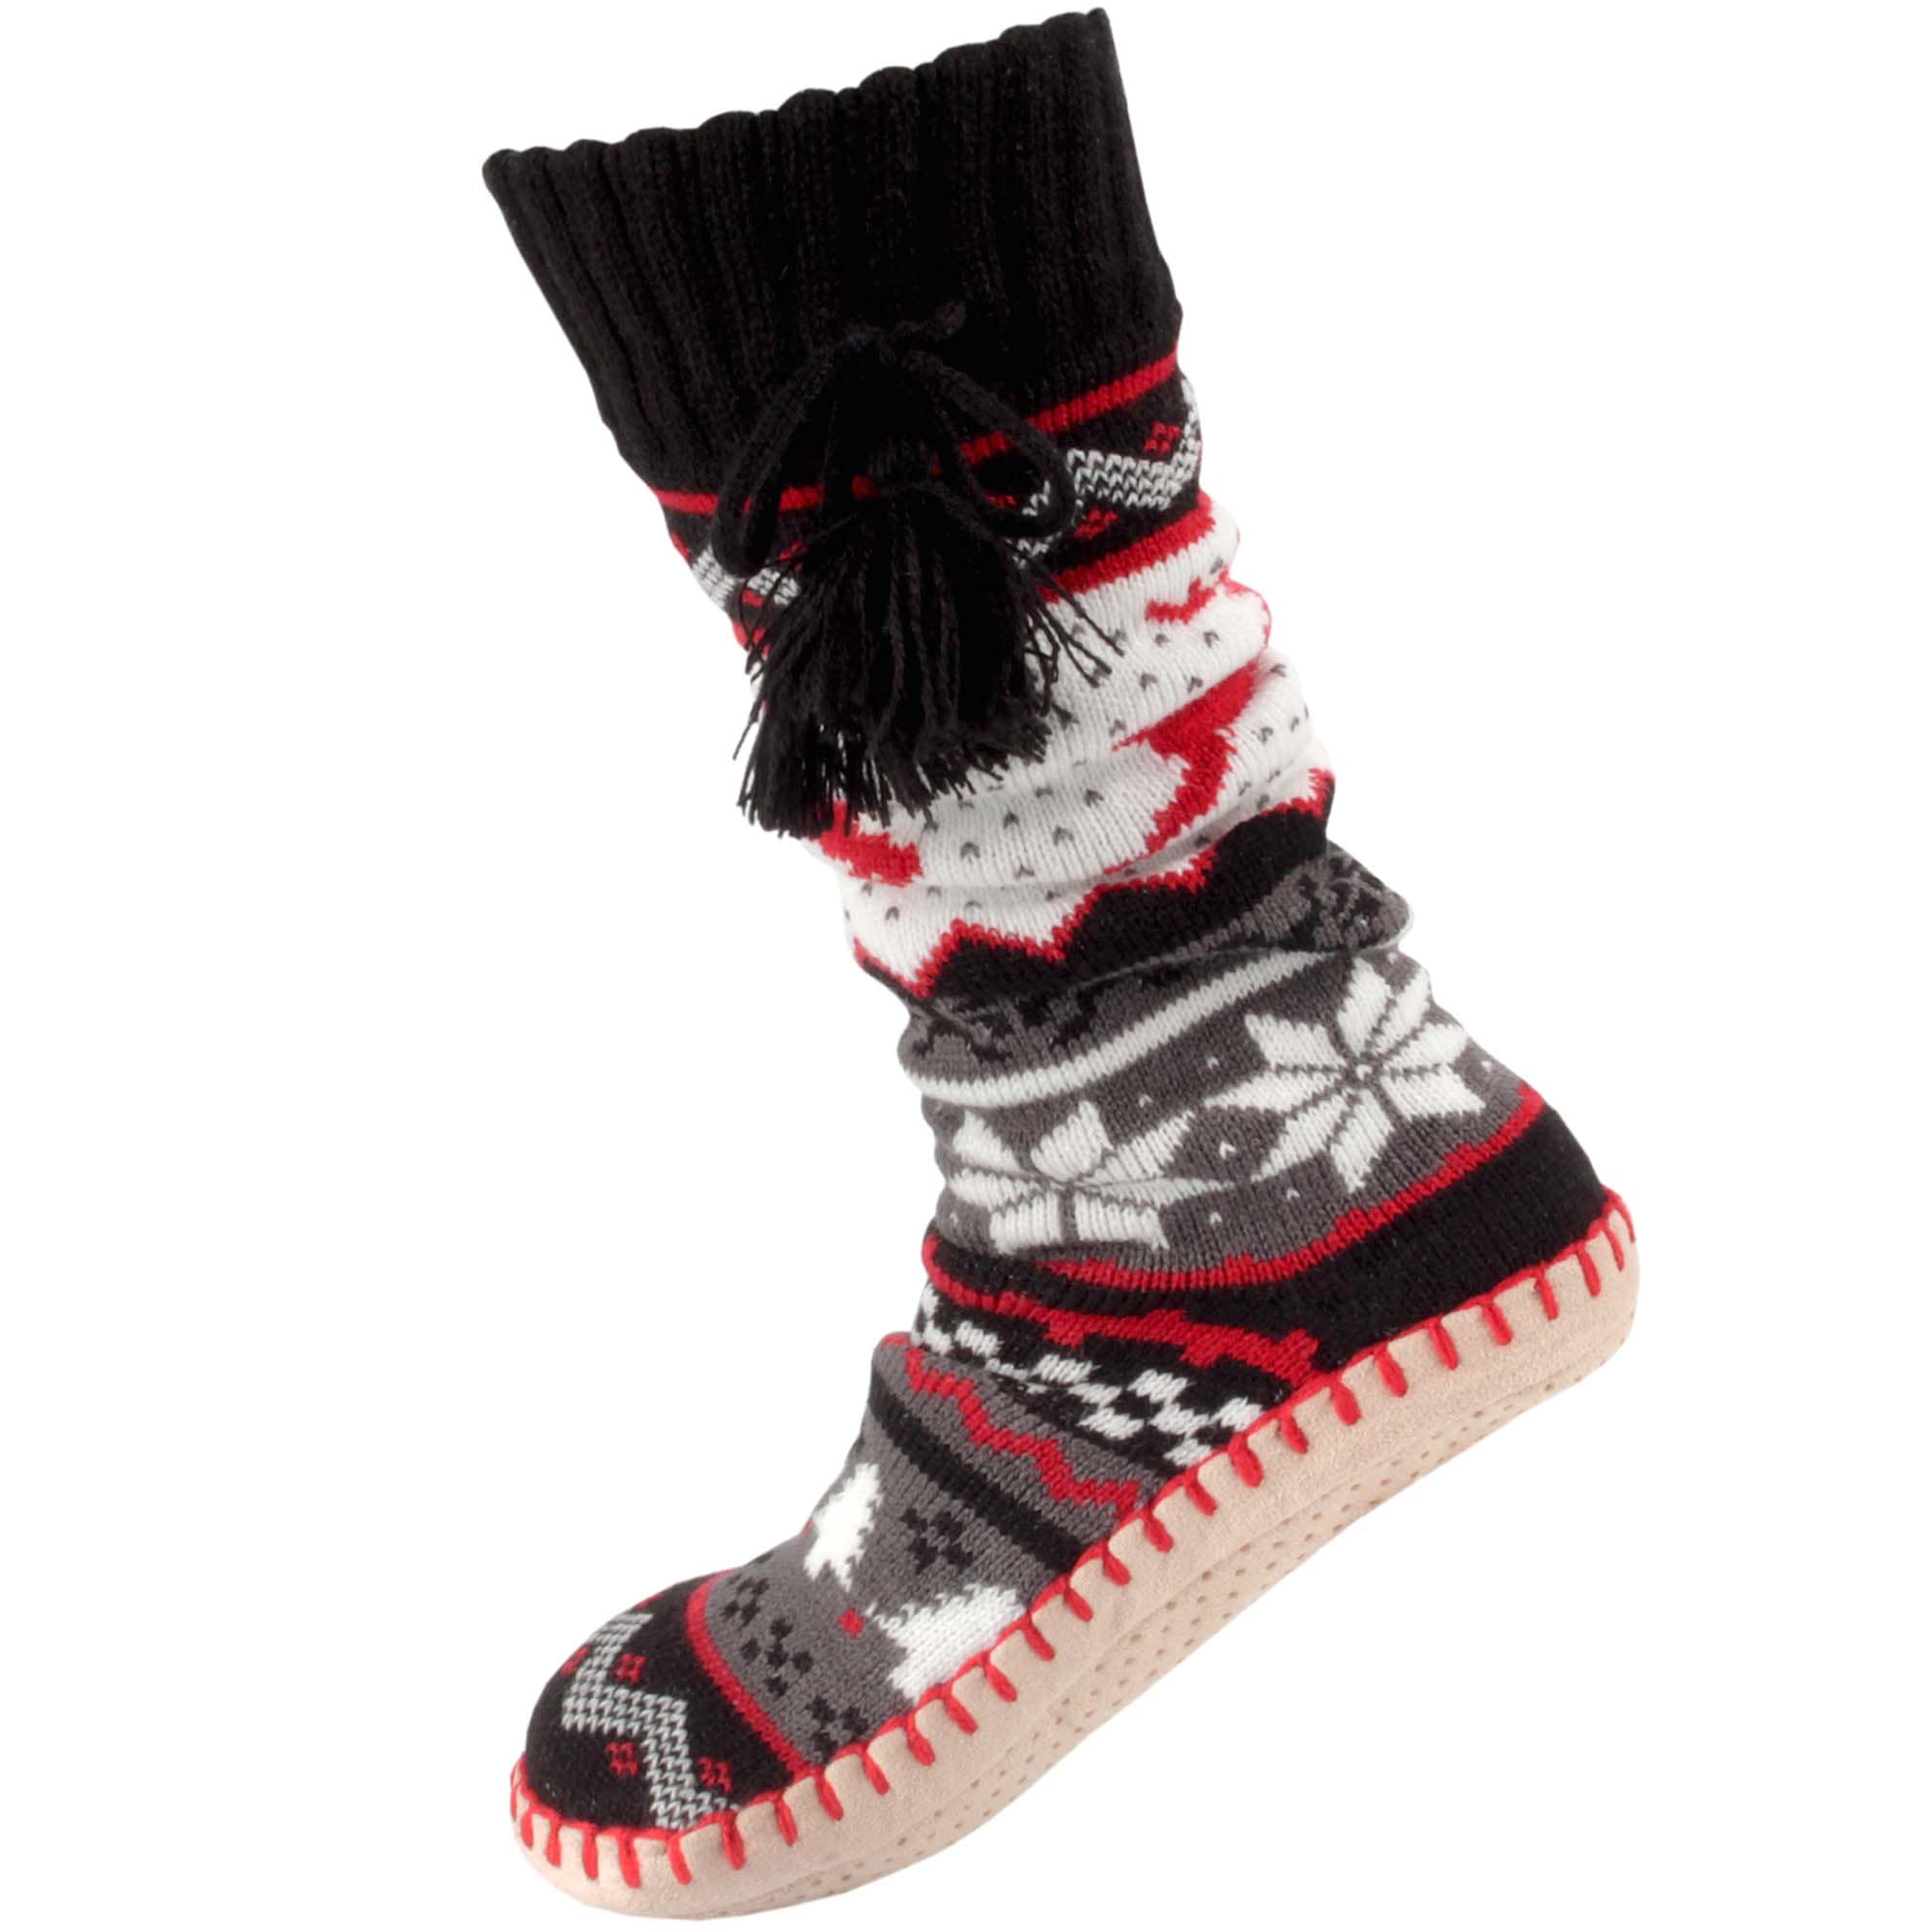 Belloxis Slipper Socks Women Slipper Socks with Grippers for Women